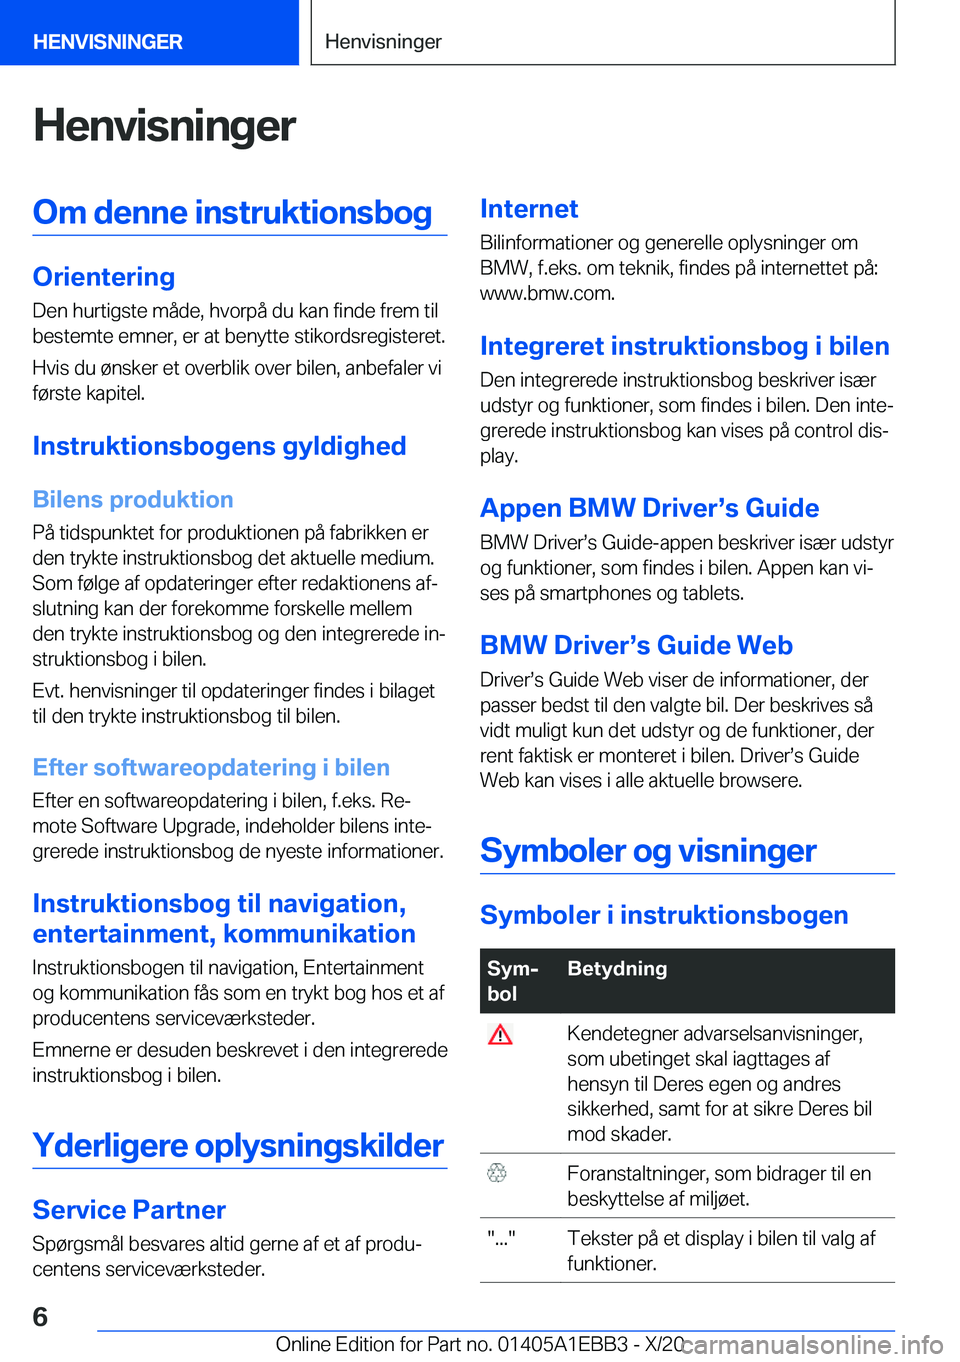 BMW 3 SERIES 2021  InstruktionsbØger (in Danish) �H�e�n�v�i�s�n�i�n�g�e�r�O�m��d�e�n�n�e��i�n�s�t�r�u�k�t�i�o�n�s�b�o�g
�O�r�i�e�n�t�e�r�i�n�g�D�e�n��h�u�r�t�i�g�s�t�e��m�å�d�e�,��h�v�o�r�p�å��d�u��k�a�n��f�i�n�d�e��f�r�e�m��t�i�l
�b�e�s